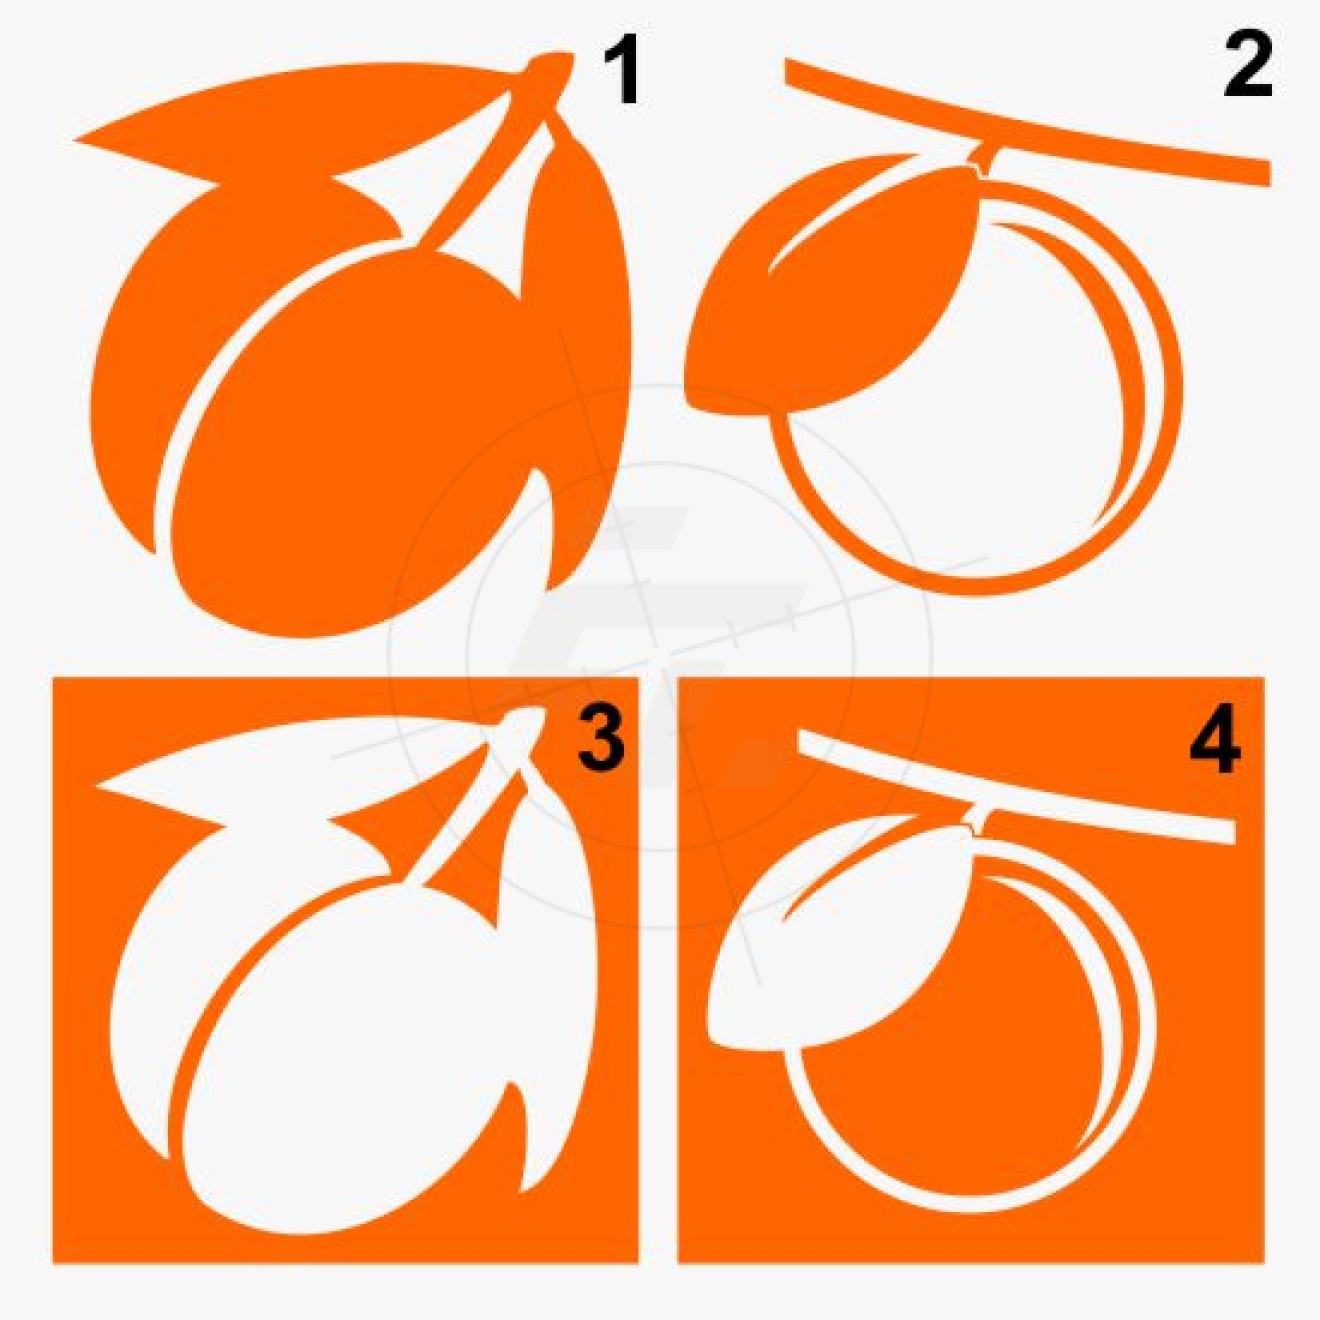 Pfirsich, Mandarine, mit Stengel und Blättern